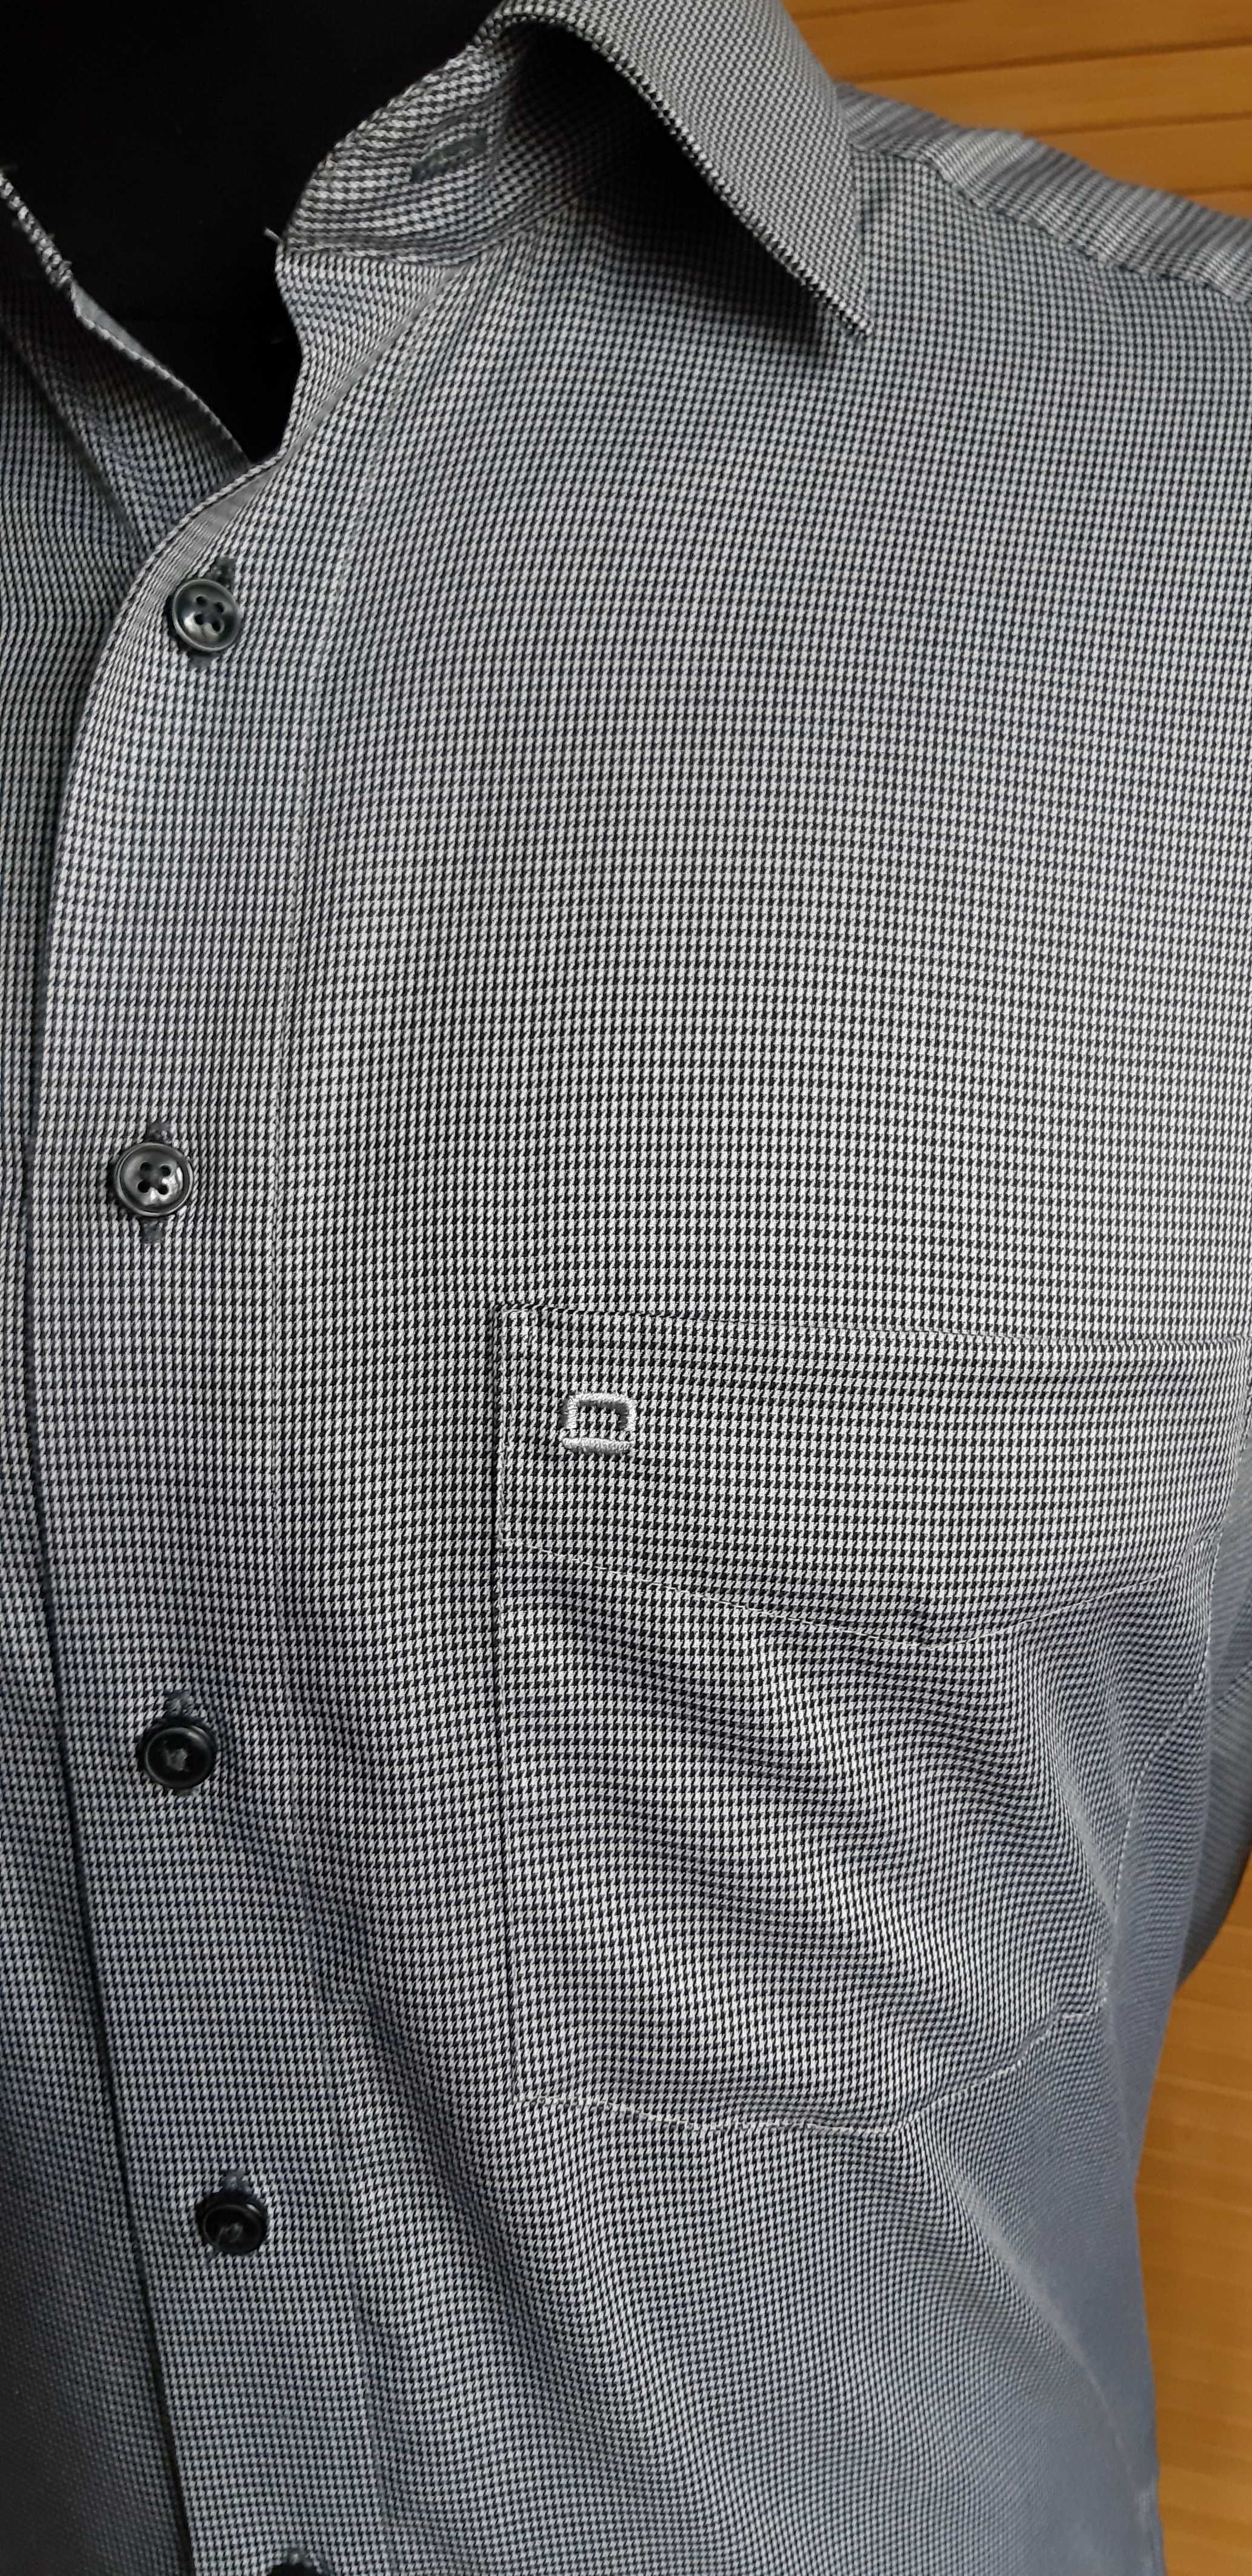 мужская рубашка OLIMP 41/16 MODERN fit